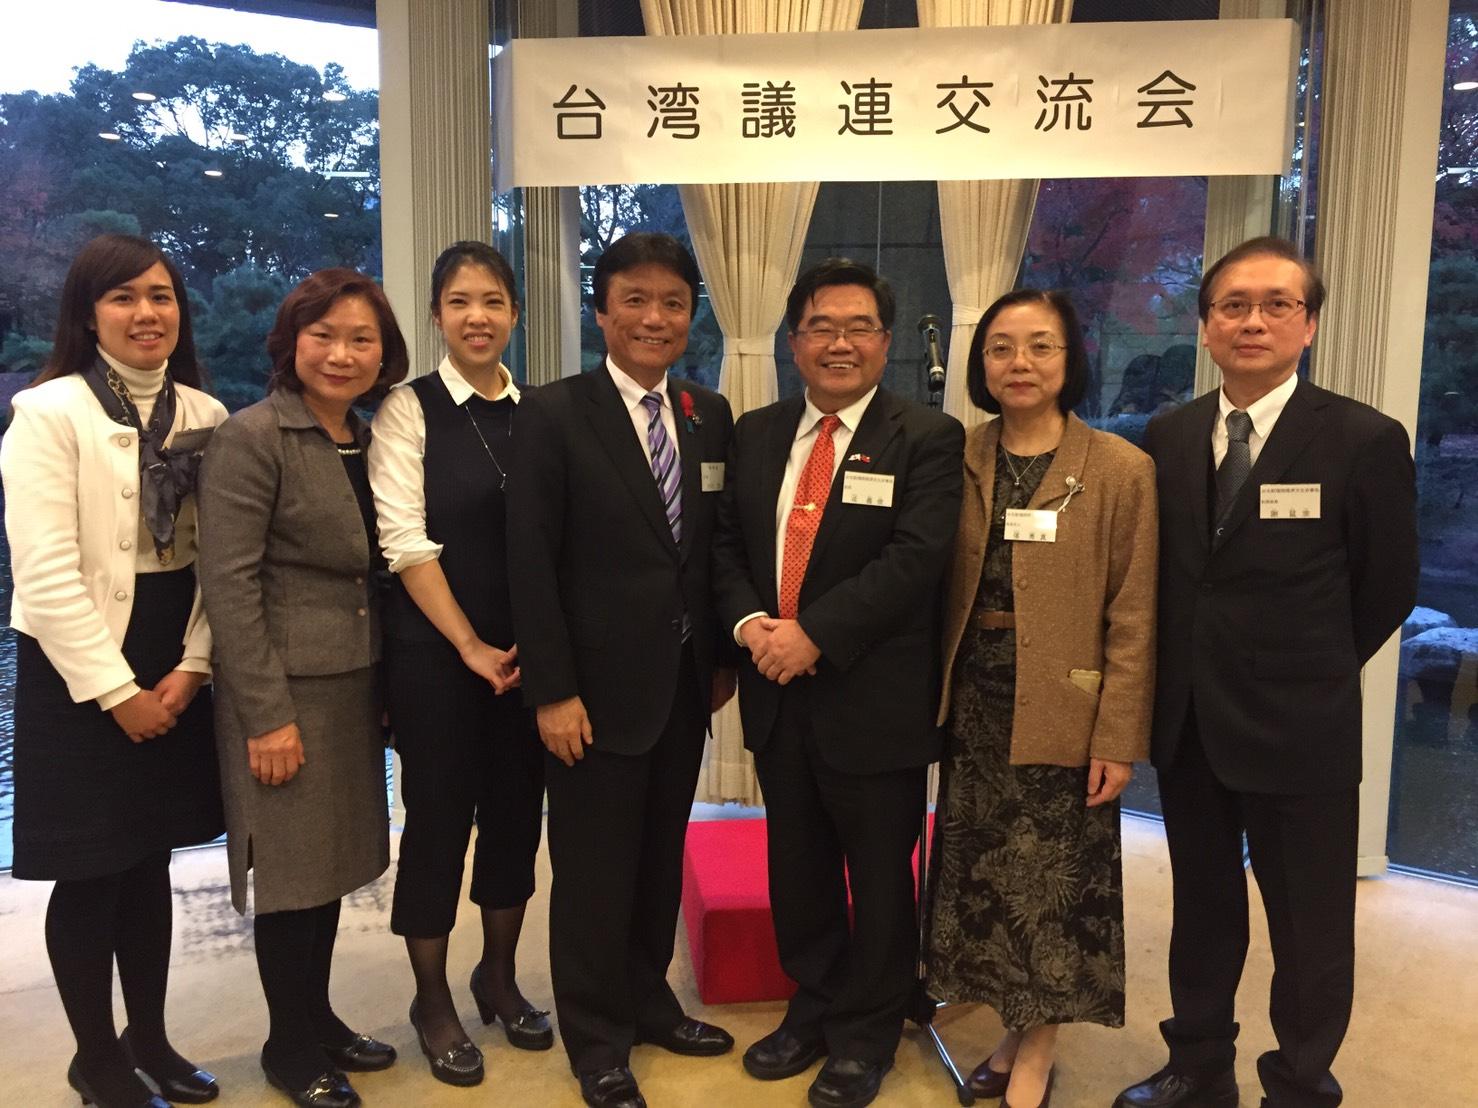 12月9日，戎總領事出席於福岡縣議會所舉辦的「日台學生意見發表交流會」